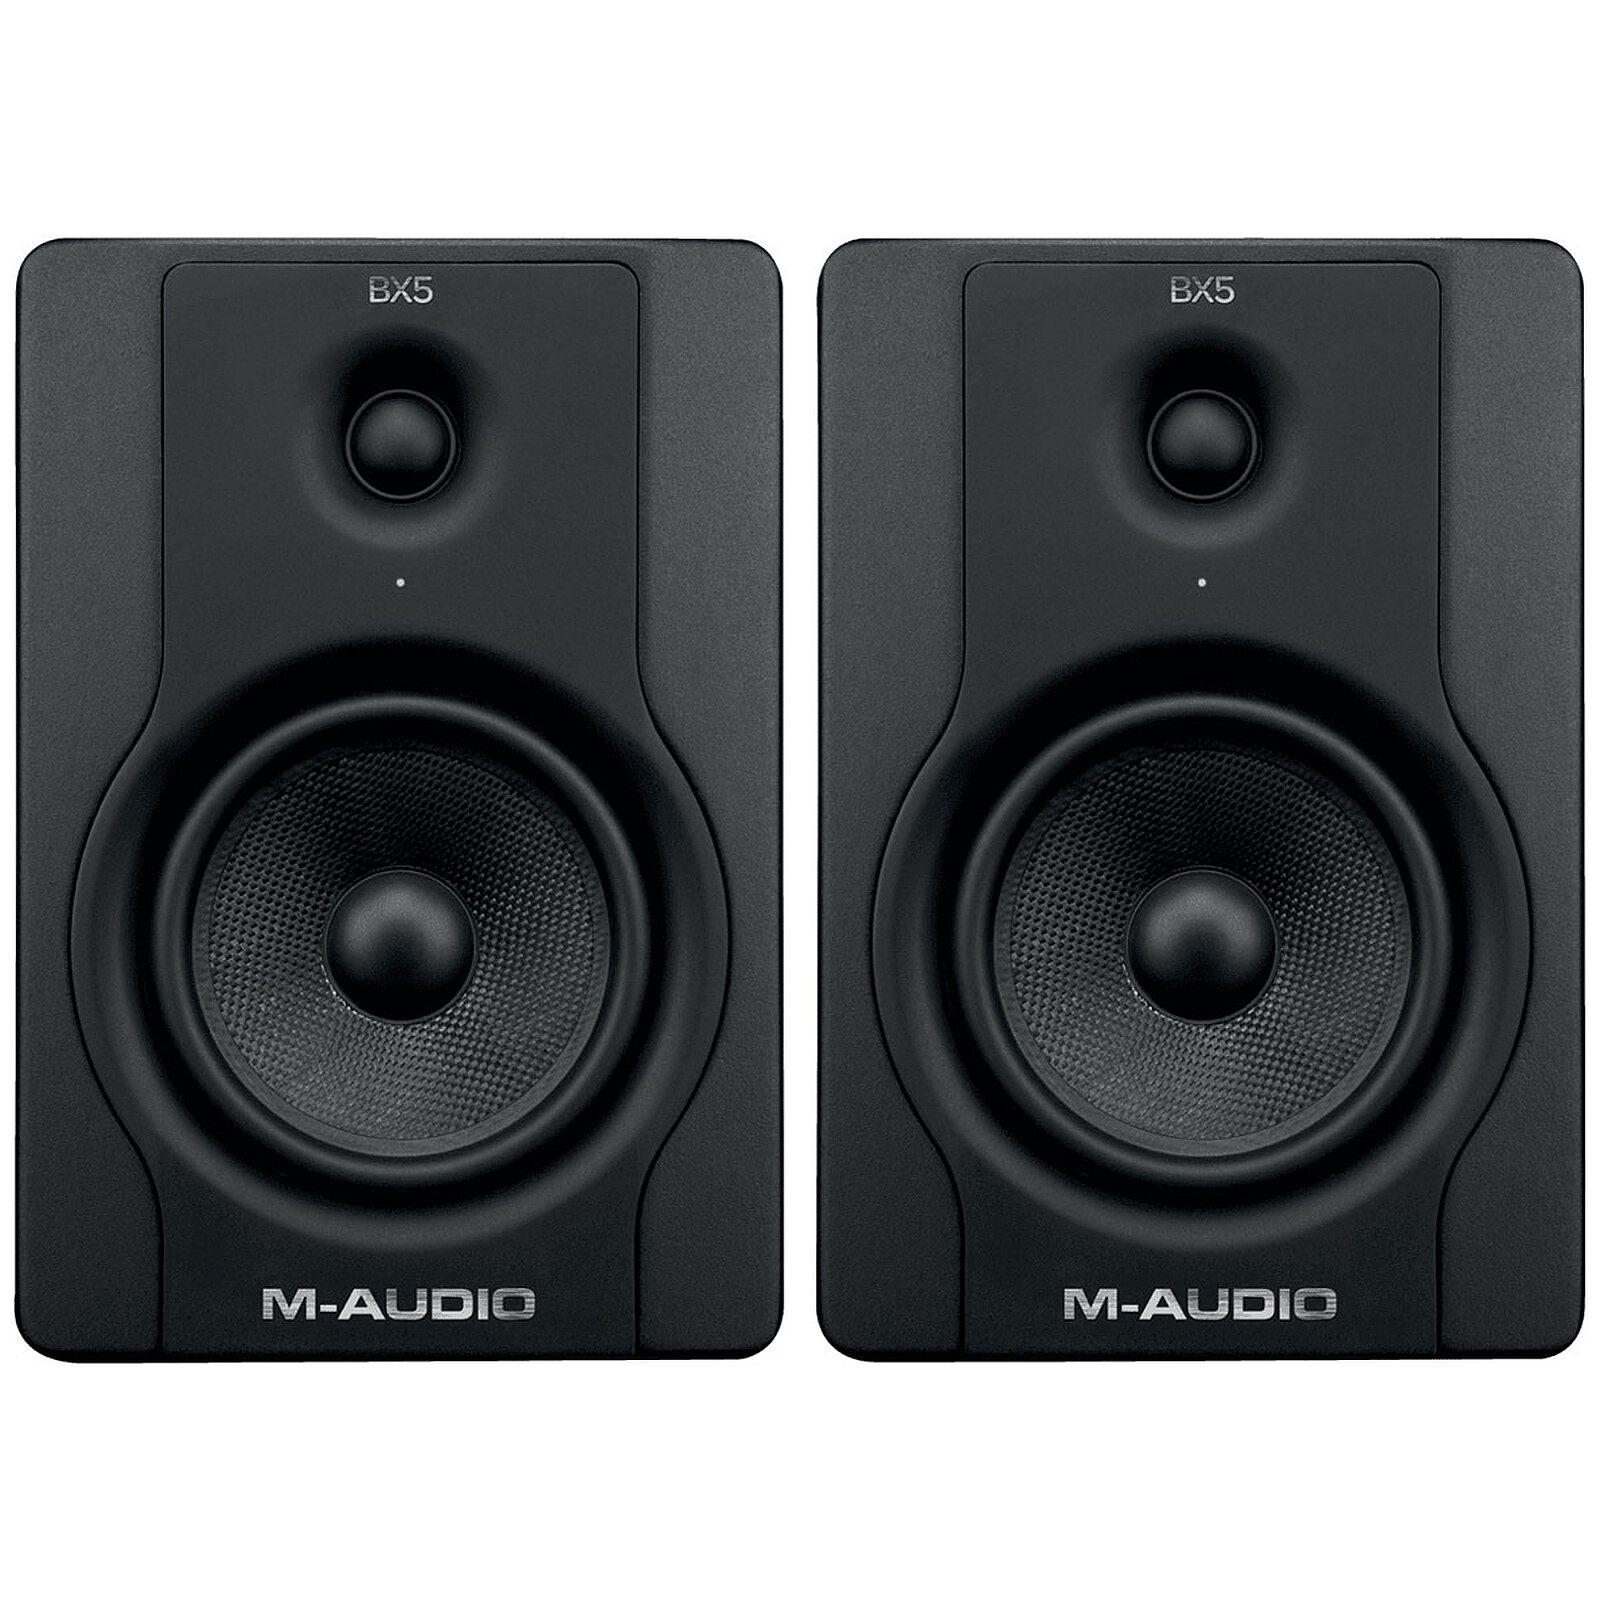 Audio bx. M-Audio Studiophile SP-bx8a. M Audio bx8. M-Audio bx5 d3. Мониторы m Audio bx5.